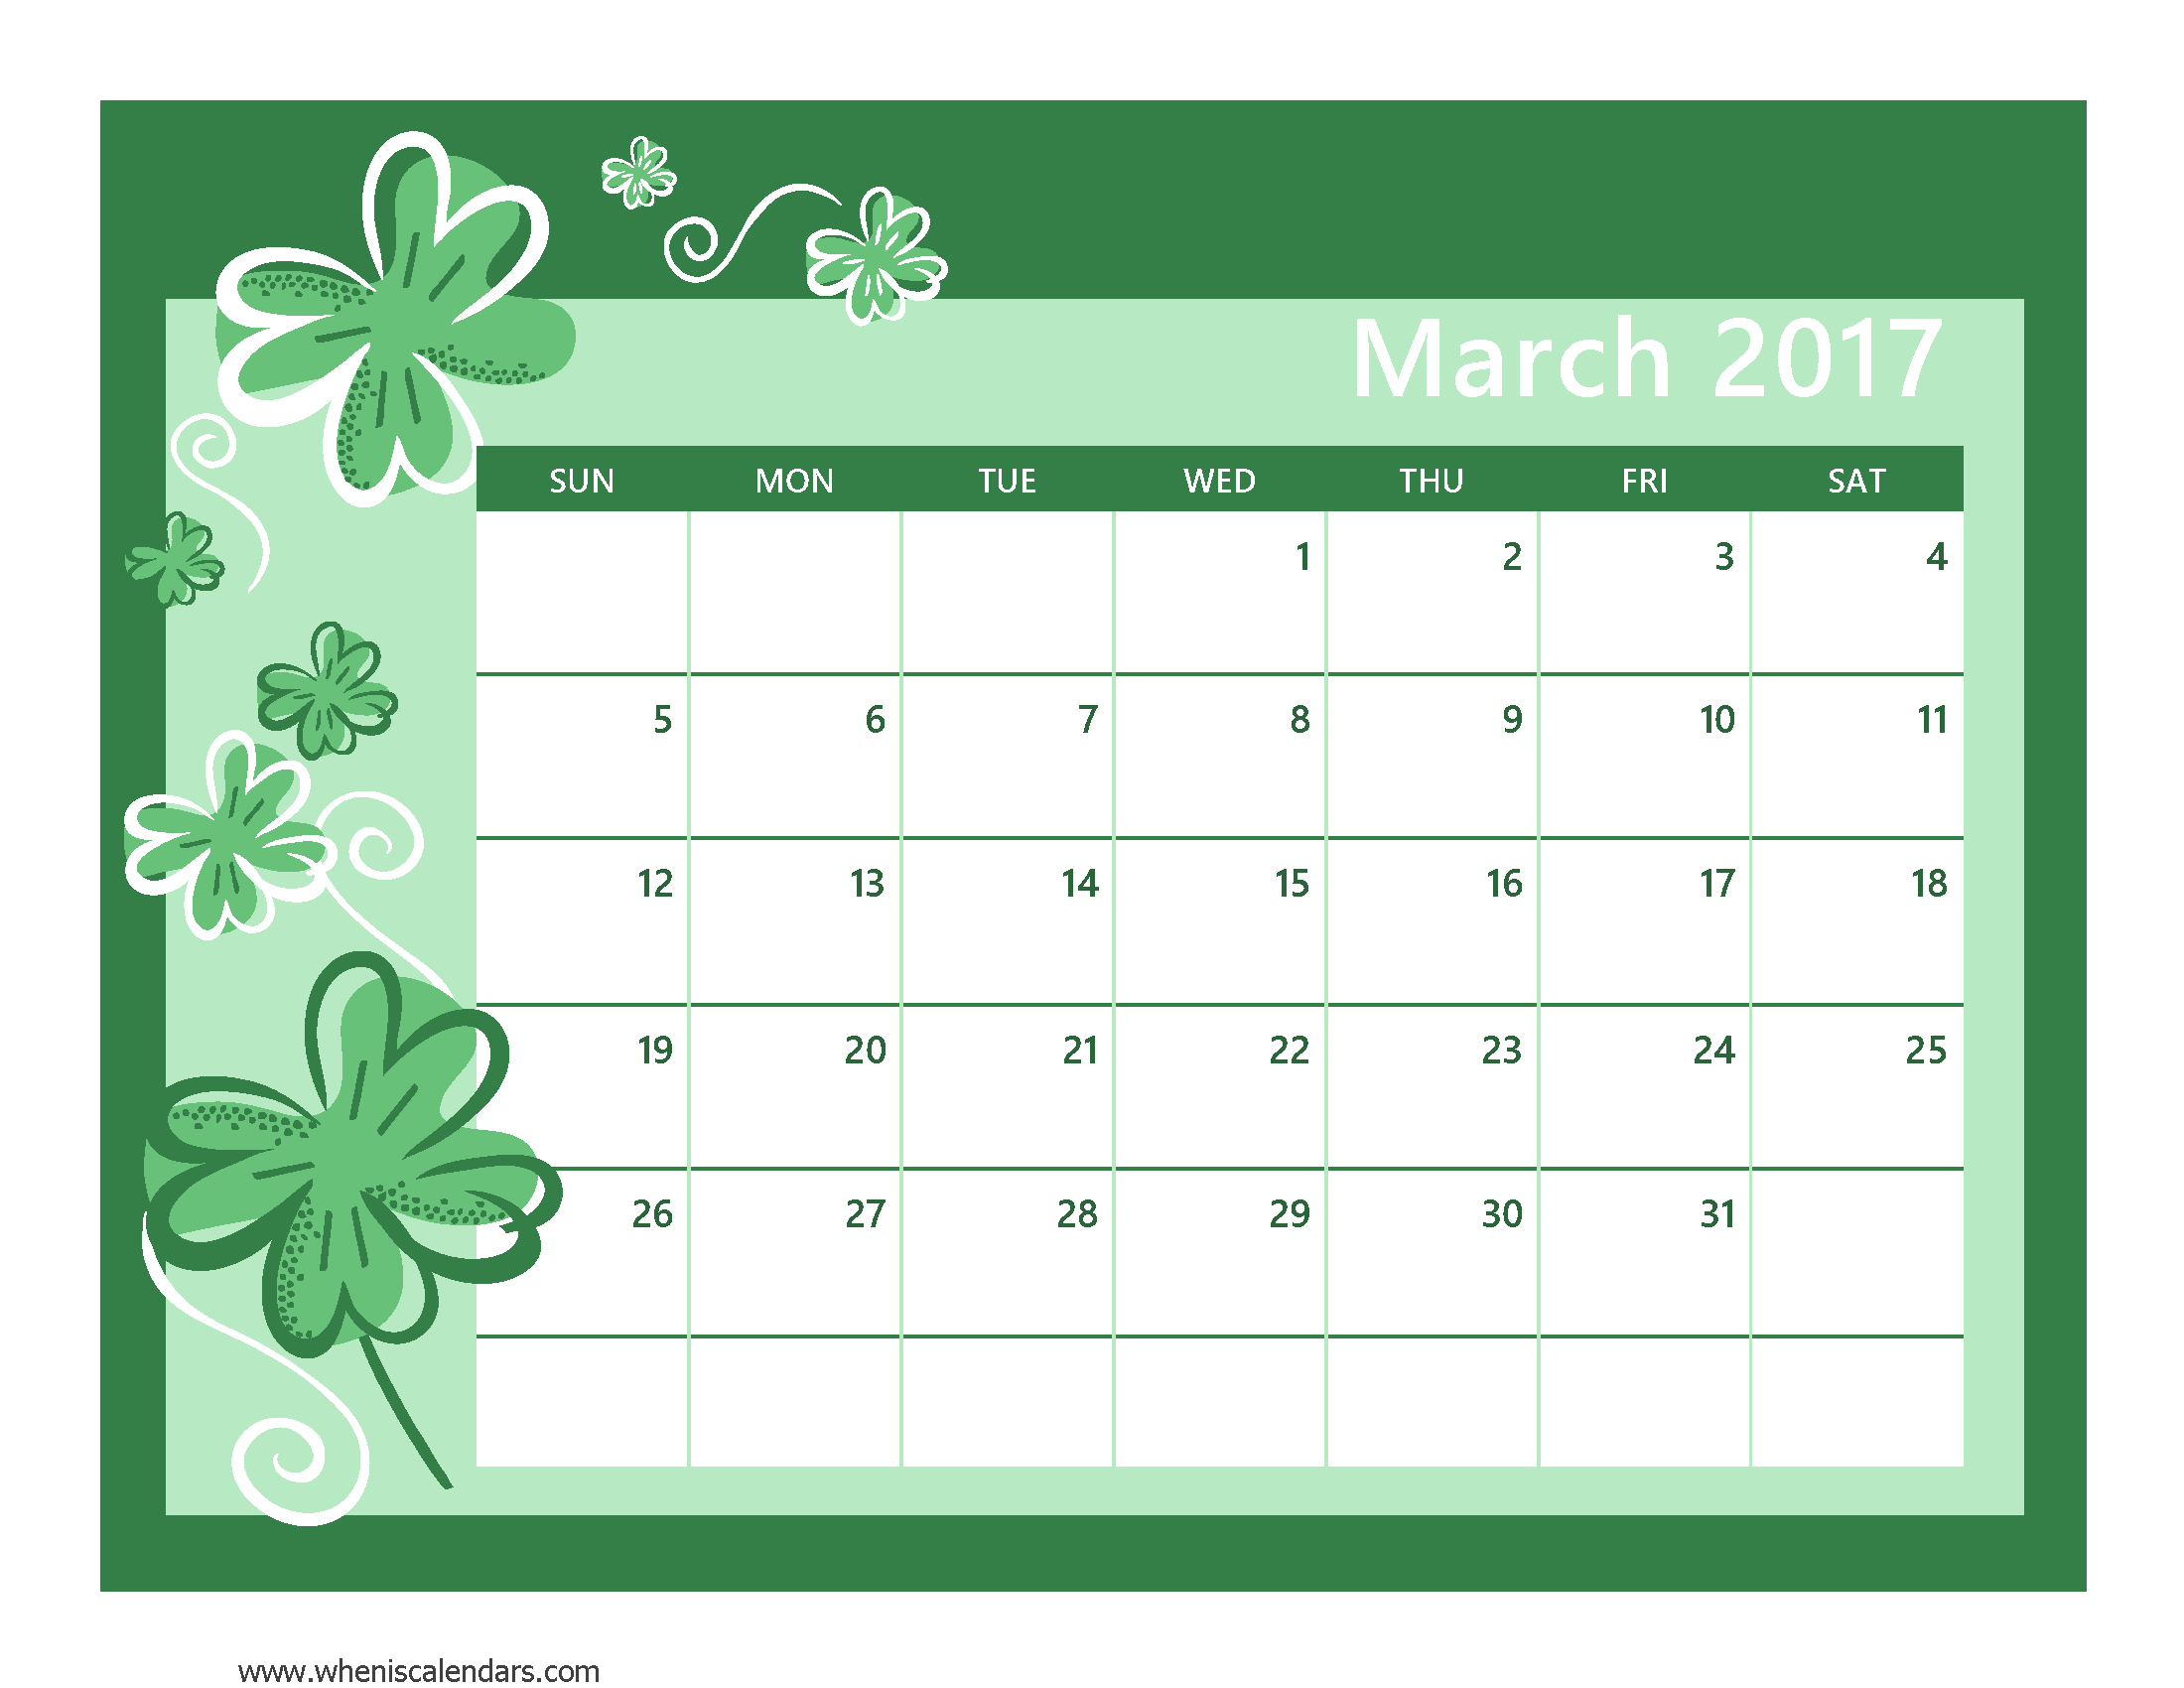 March 2017 Calendar Pdf | printable calendar templates